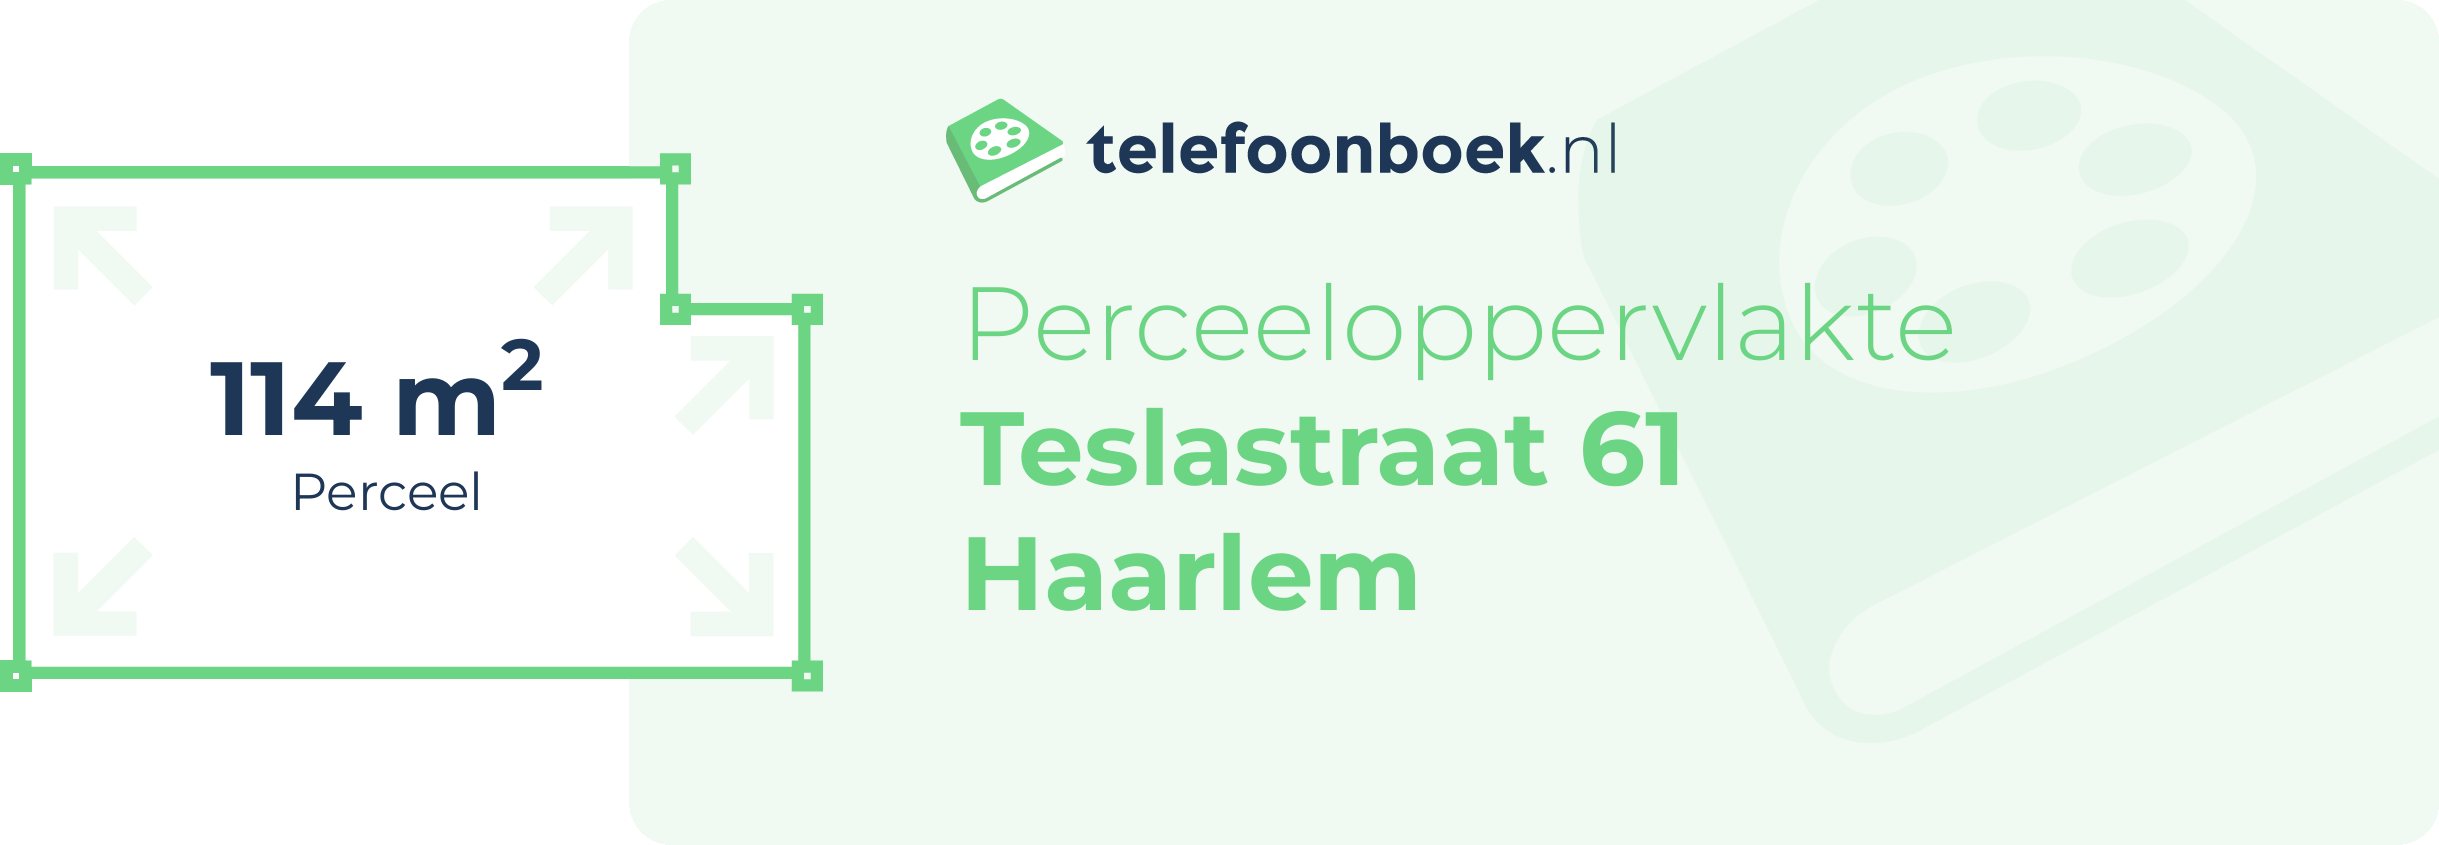 Perceeloppervlakte Teslastraat 61 Haarlem